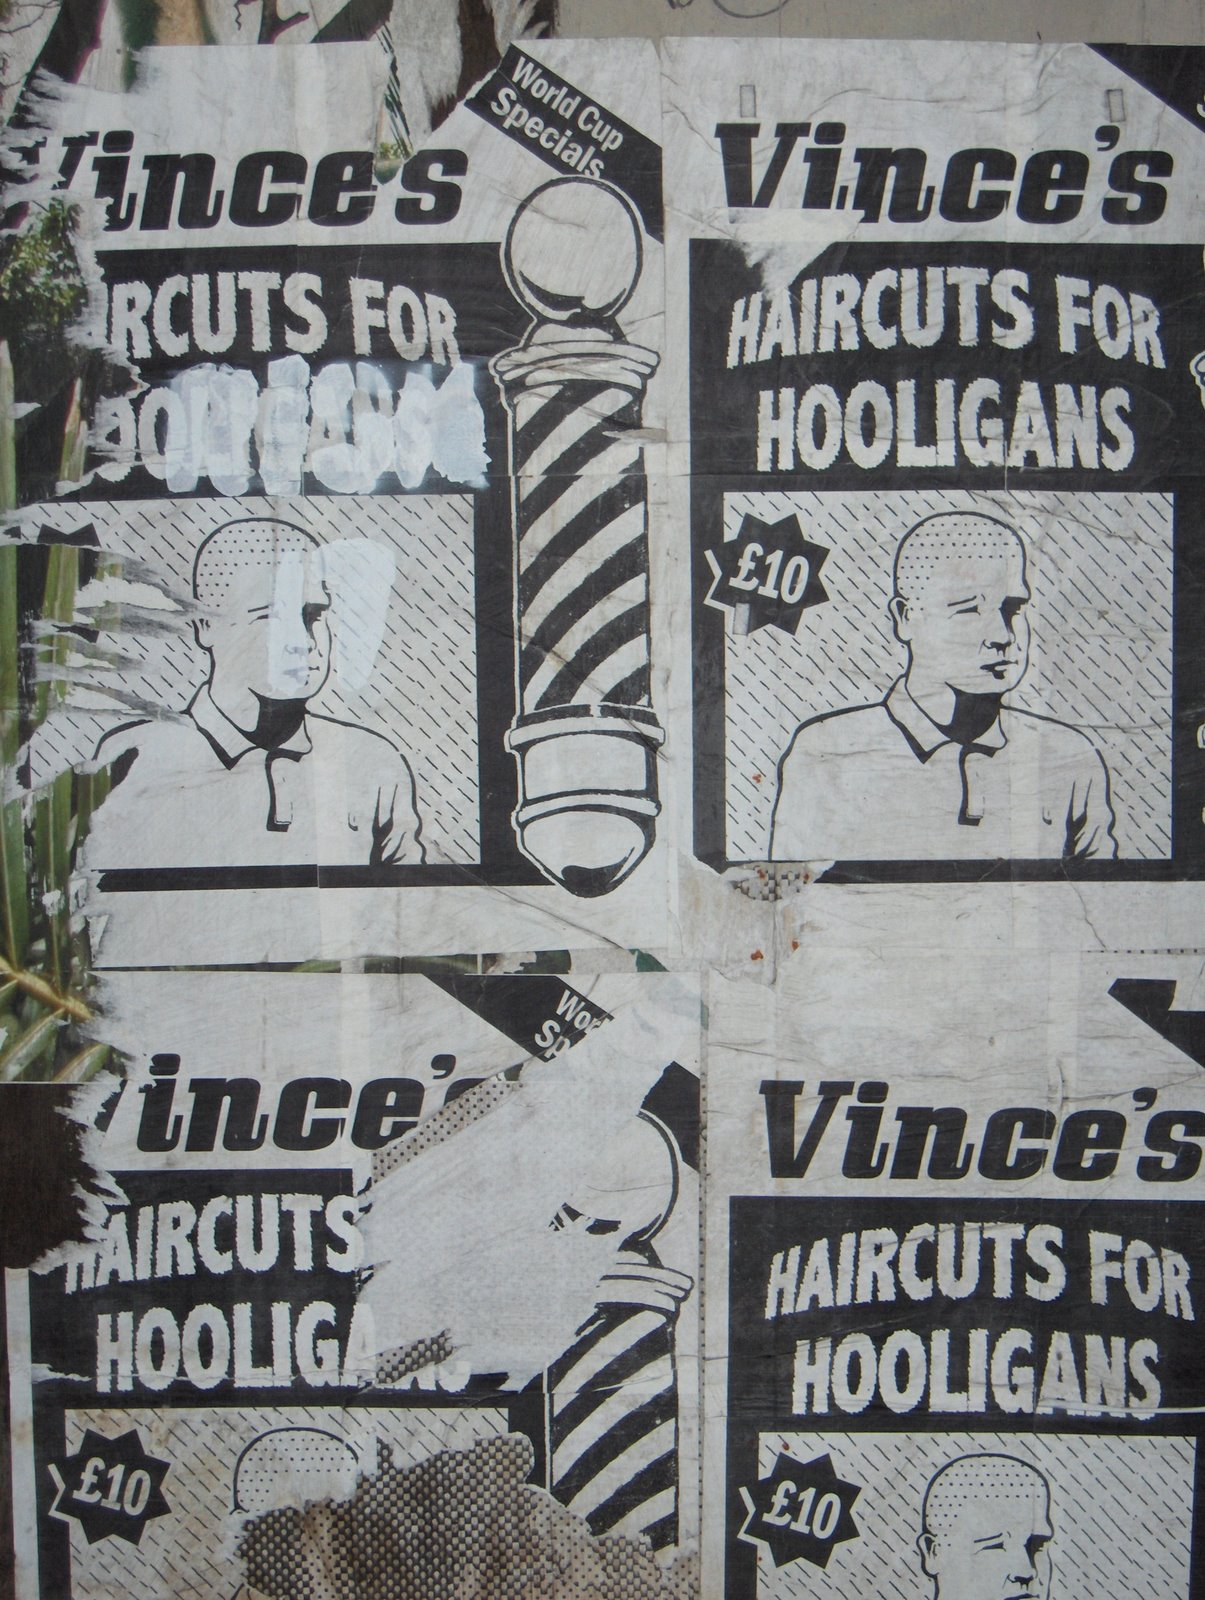 [Haircut+for+hooligans.JPG]